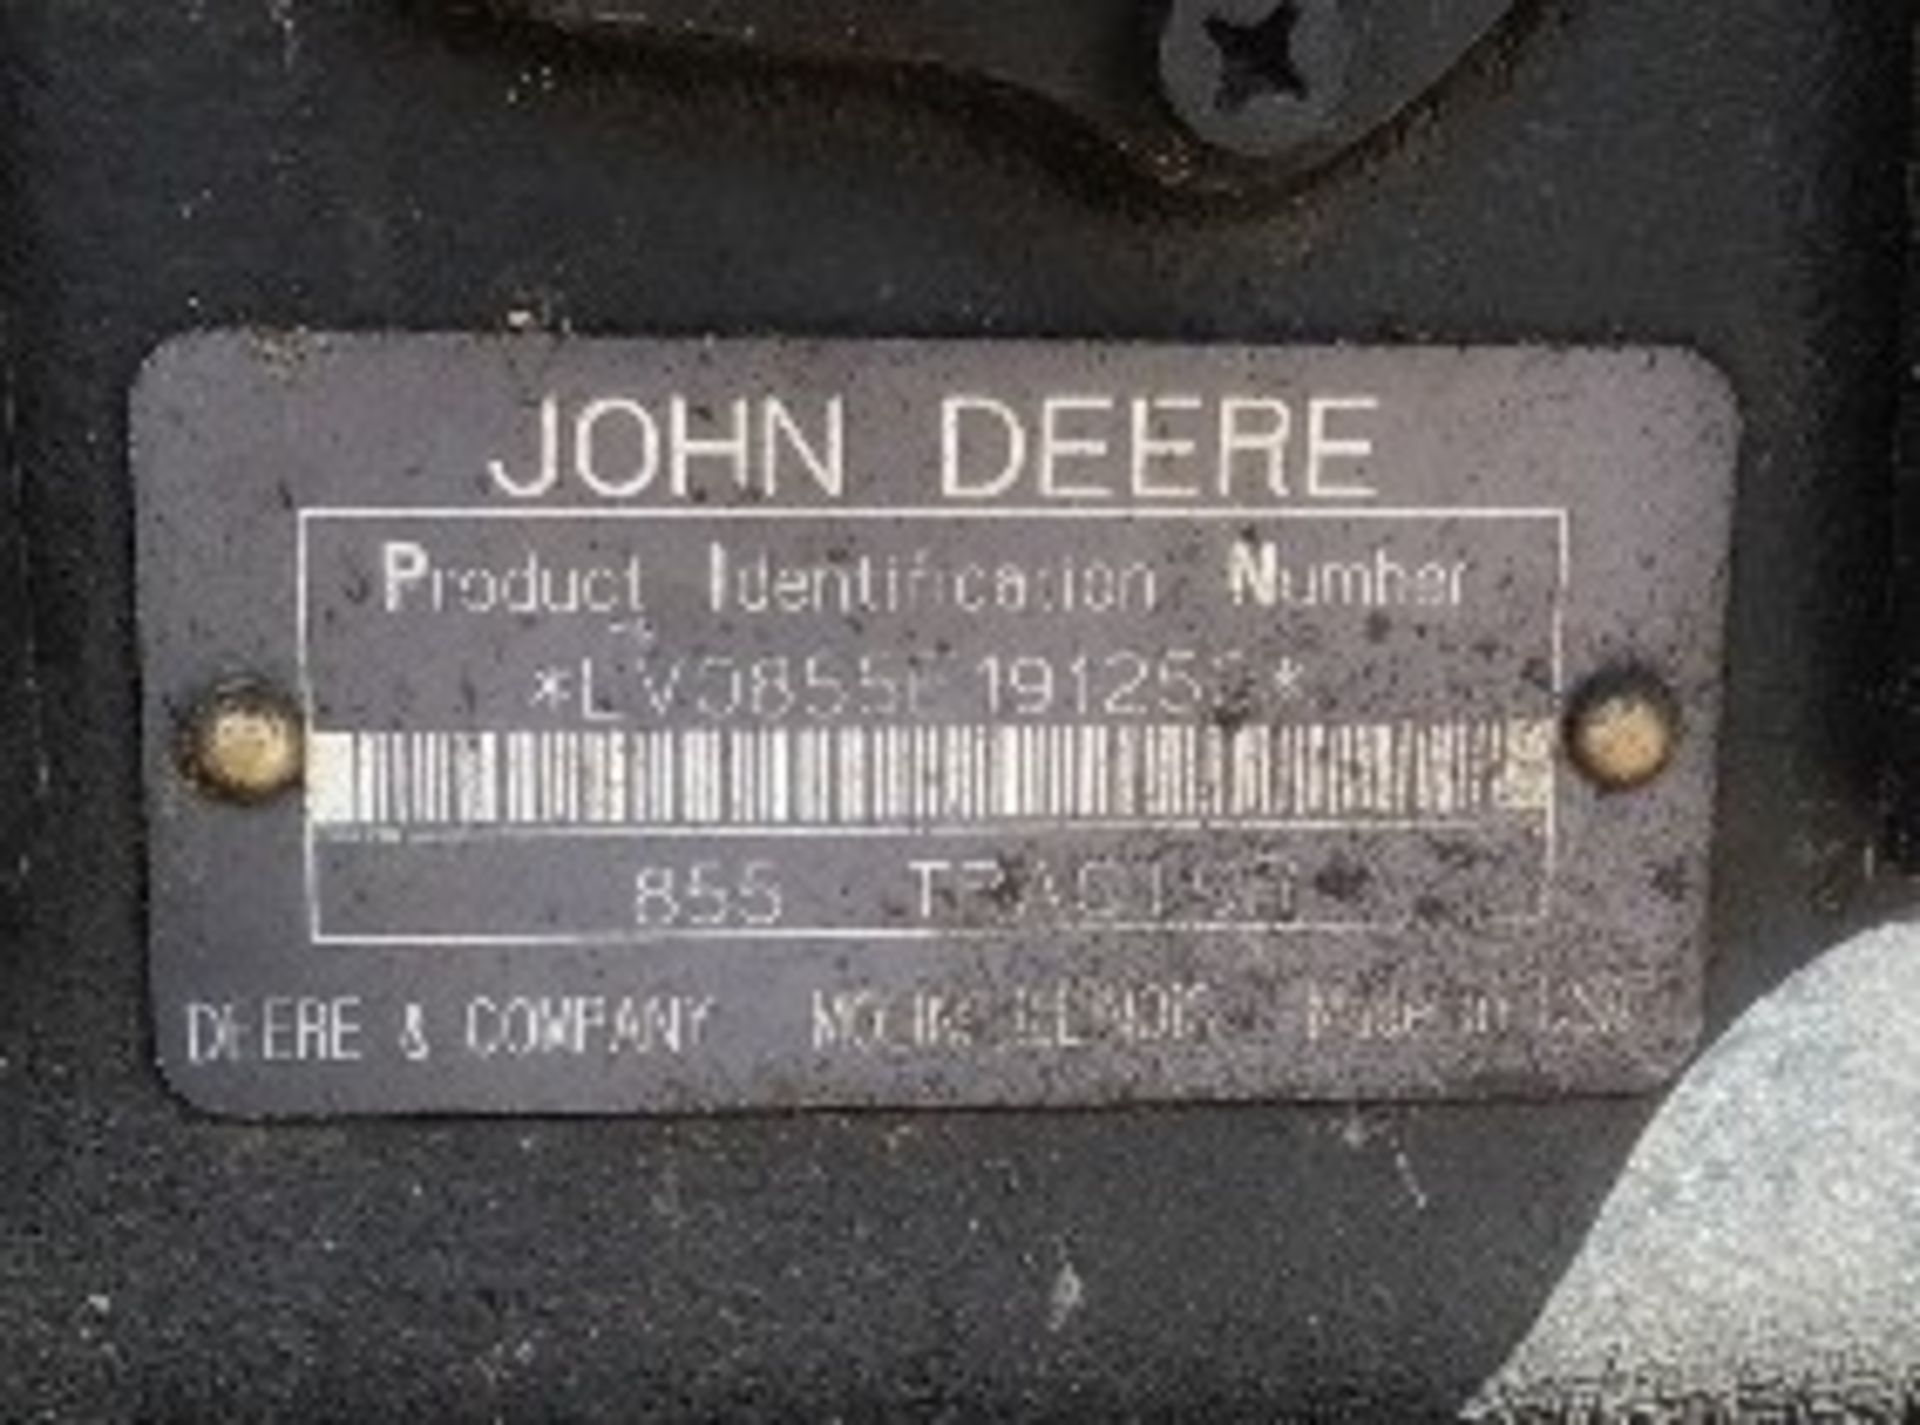 1996 John Deere 855 MFWD Utility Tractor sn LV0855E191250 3PT, 540PTO 954hrs - Image 4 of 6